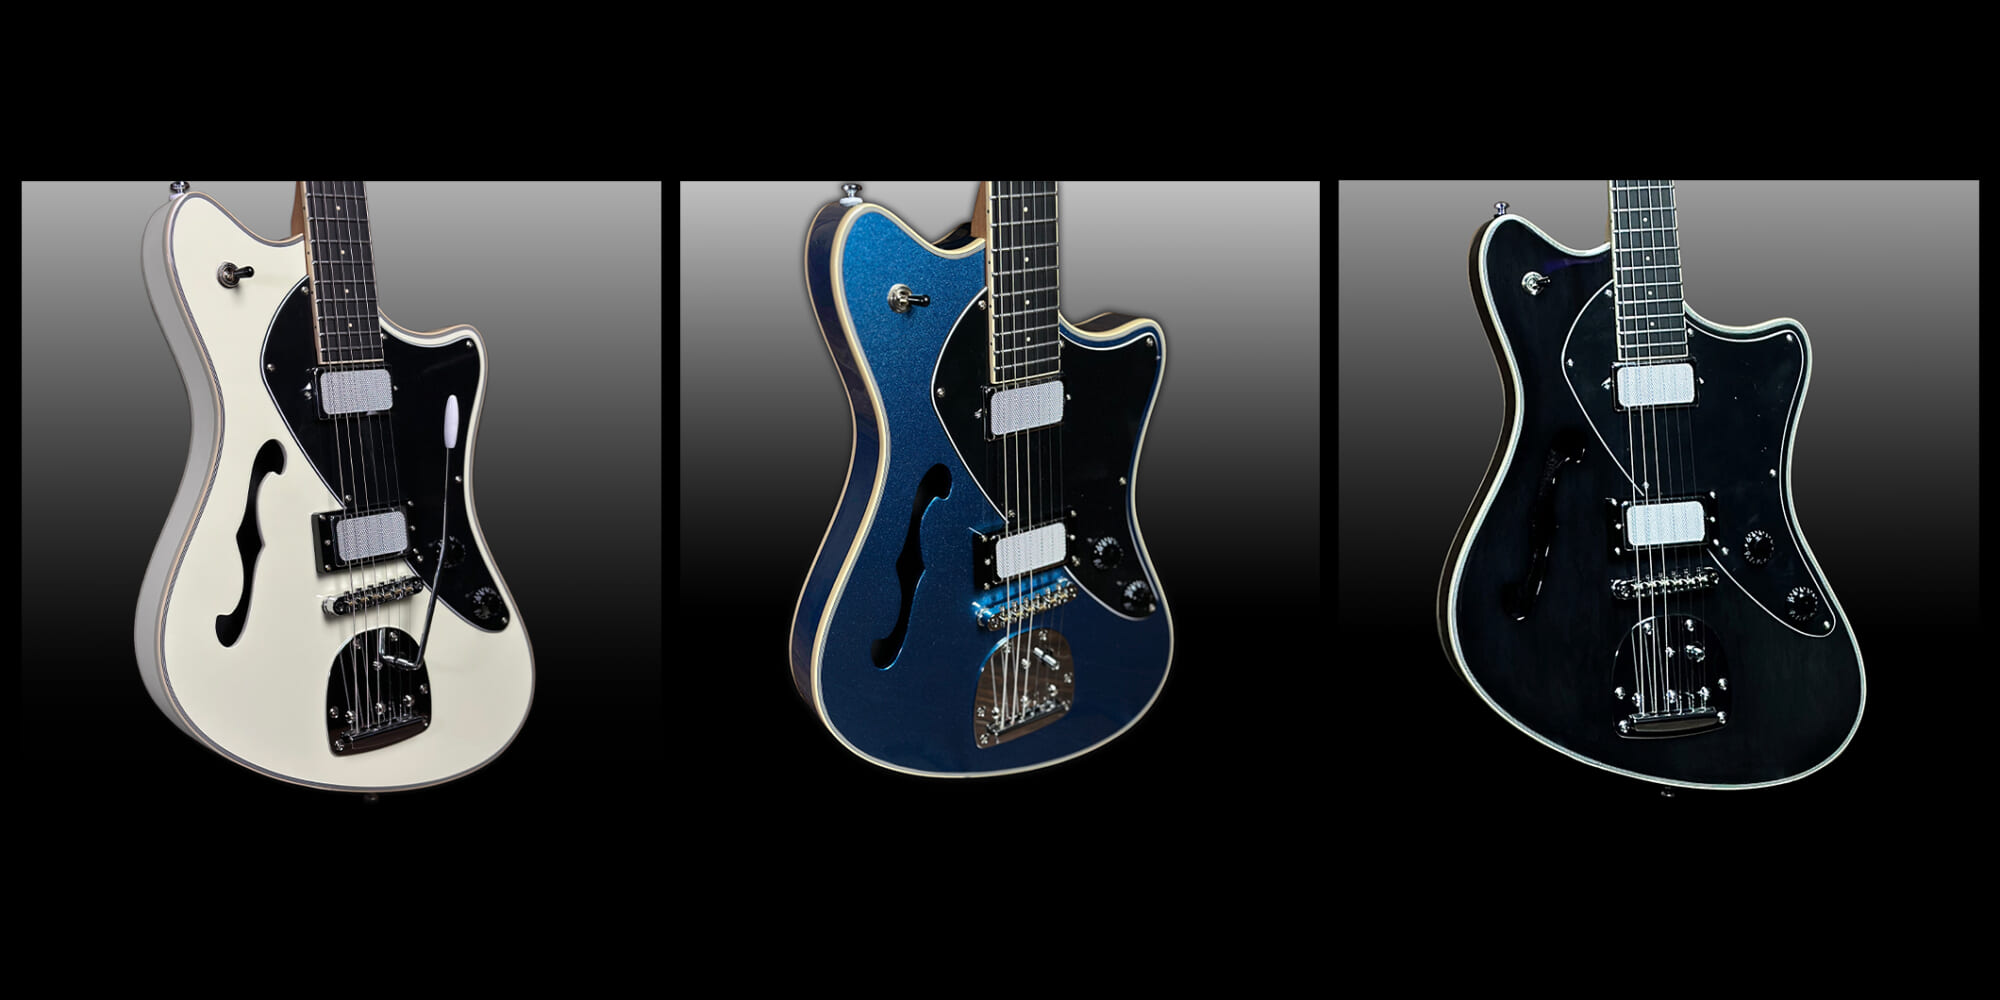 バラゲール・ギターズより、セミホロウ・ボディとトレモロを採用したエスパーダ・モデルが新登場